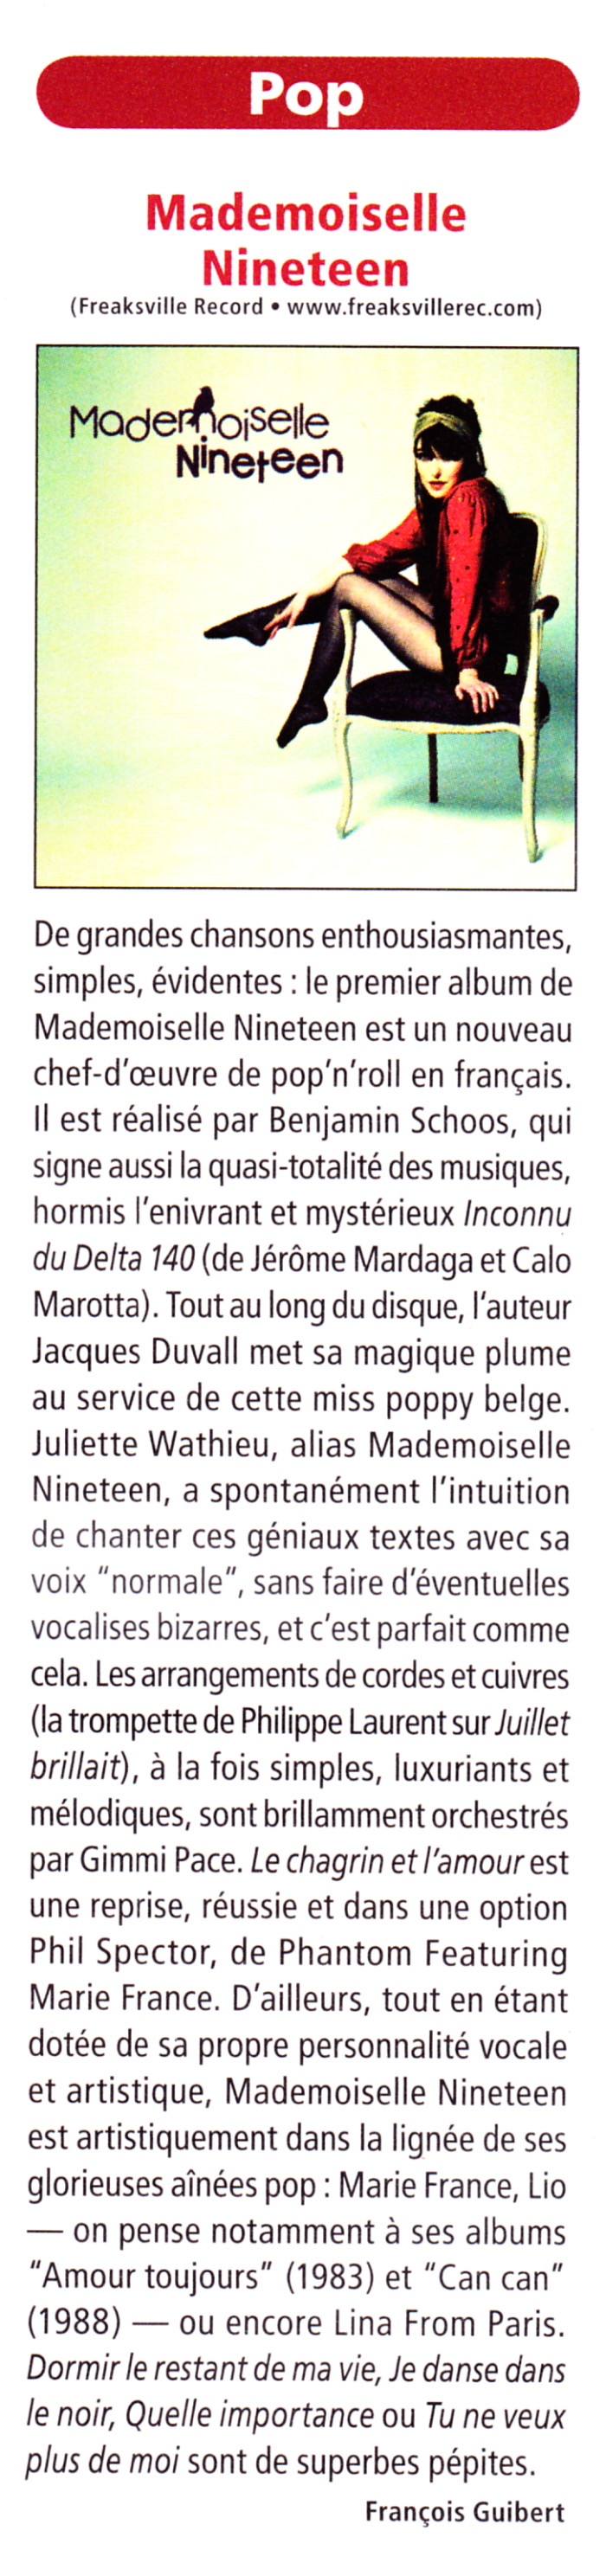 MARIE FRANCE & LES FANTOMES jouent l'album "39 DE FIEVRE" 11/05/2013 SOS RECORDING à Ans (Belgique) 13111102562416724011722795